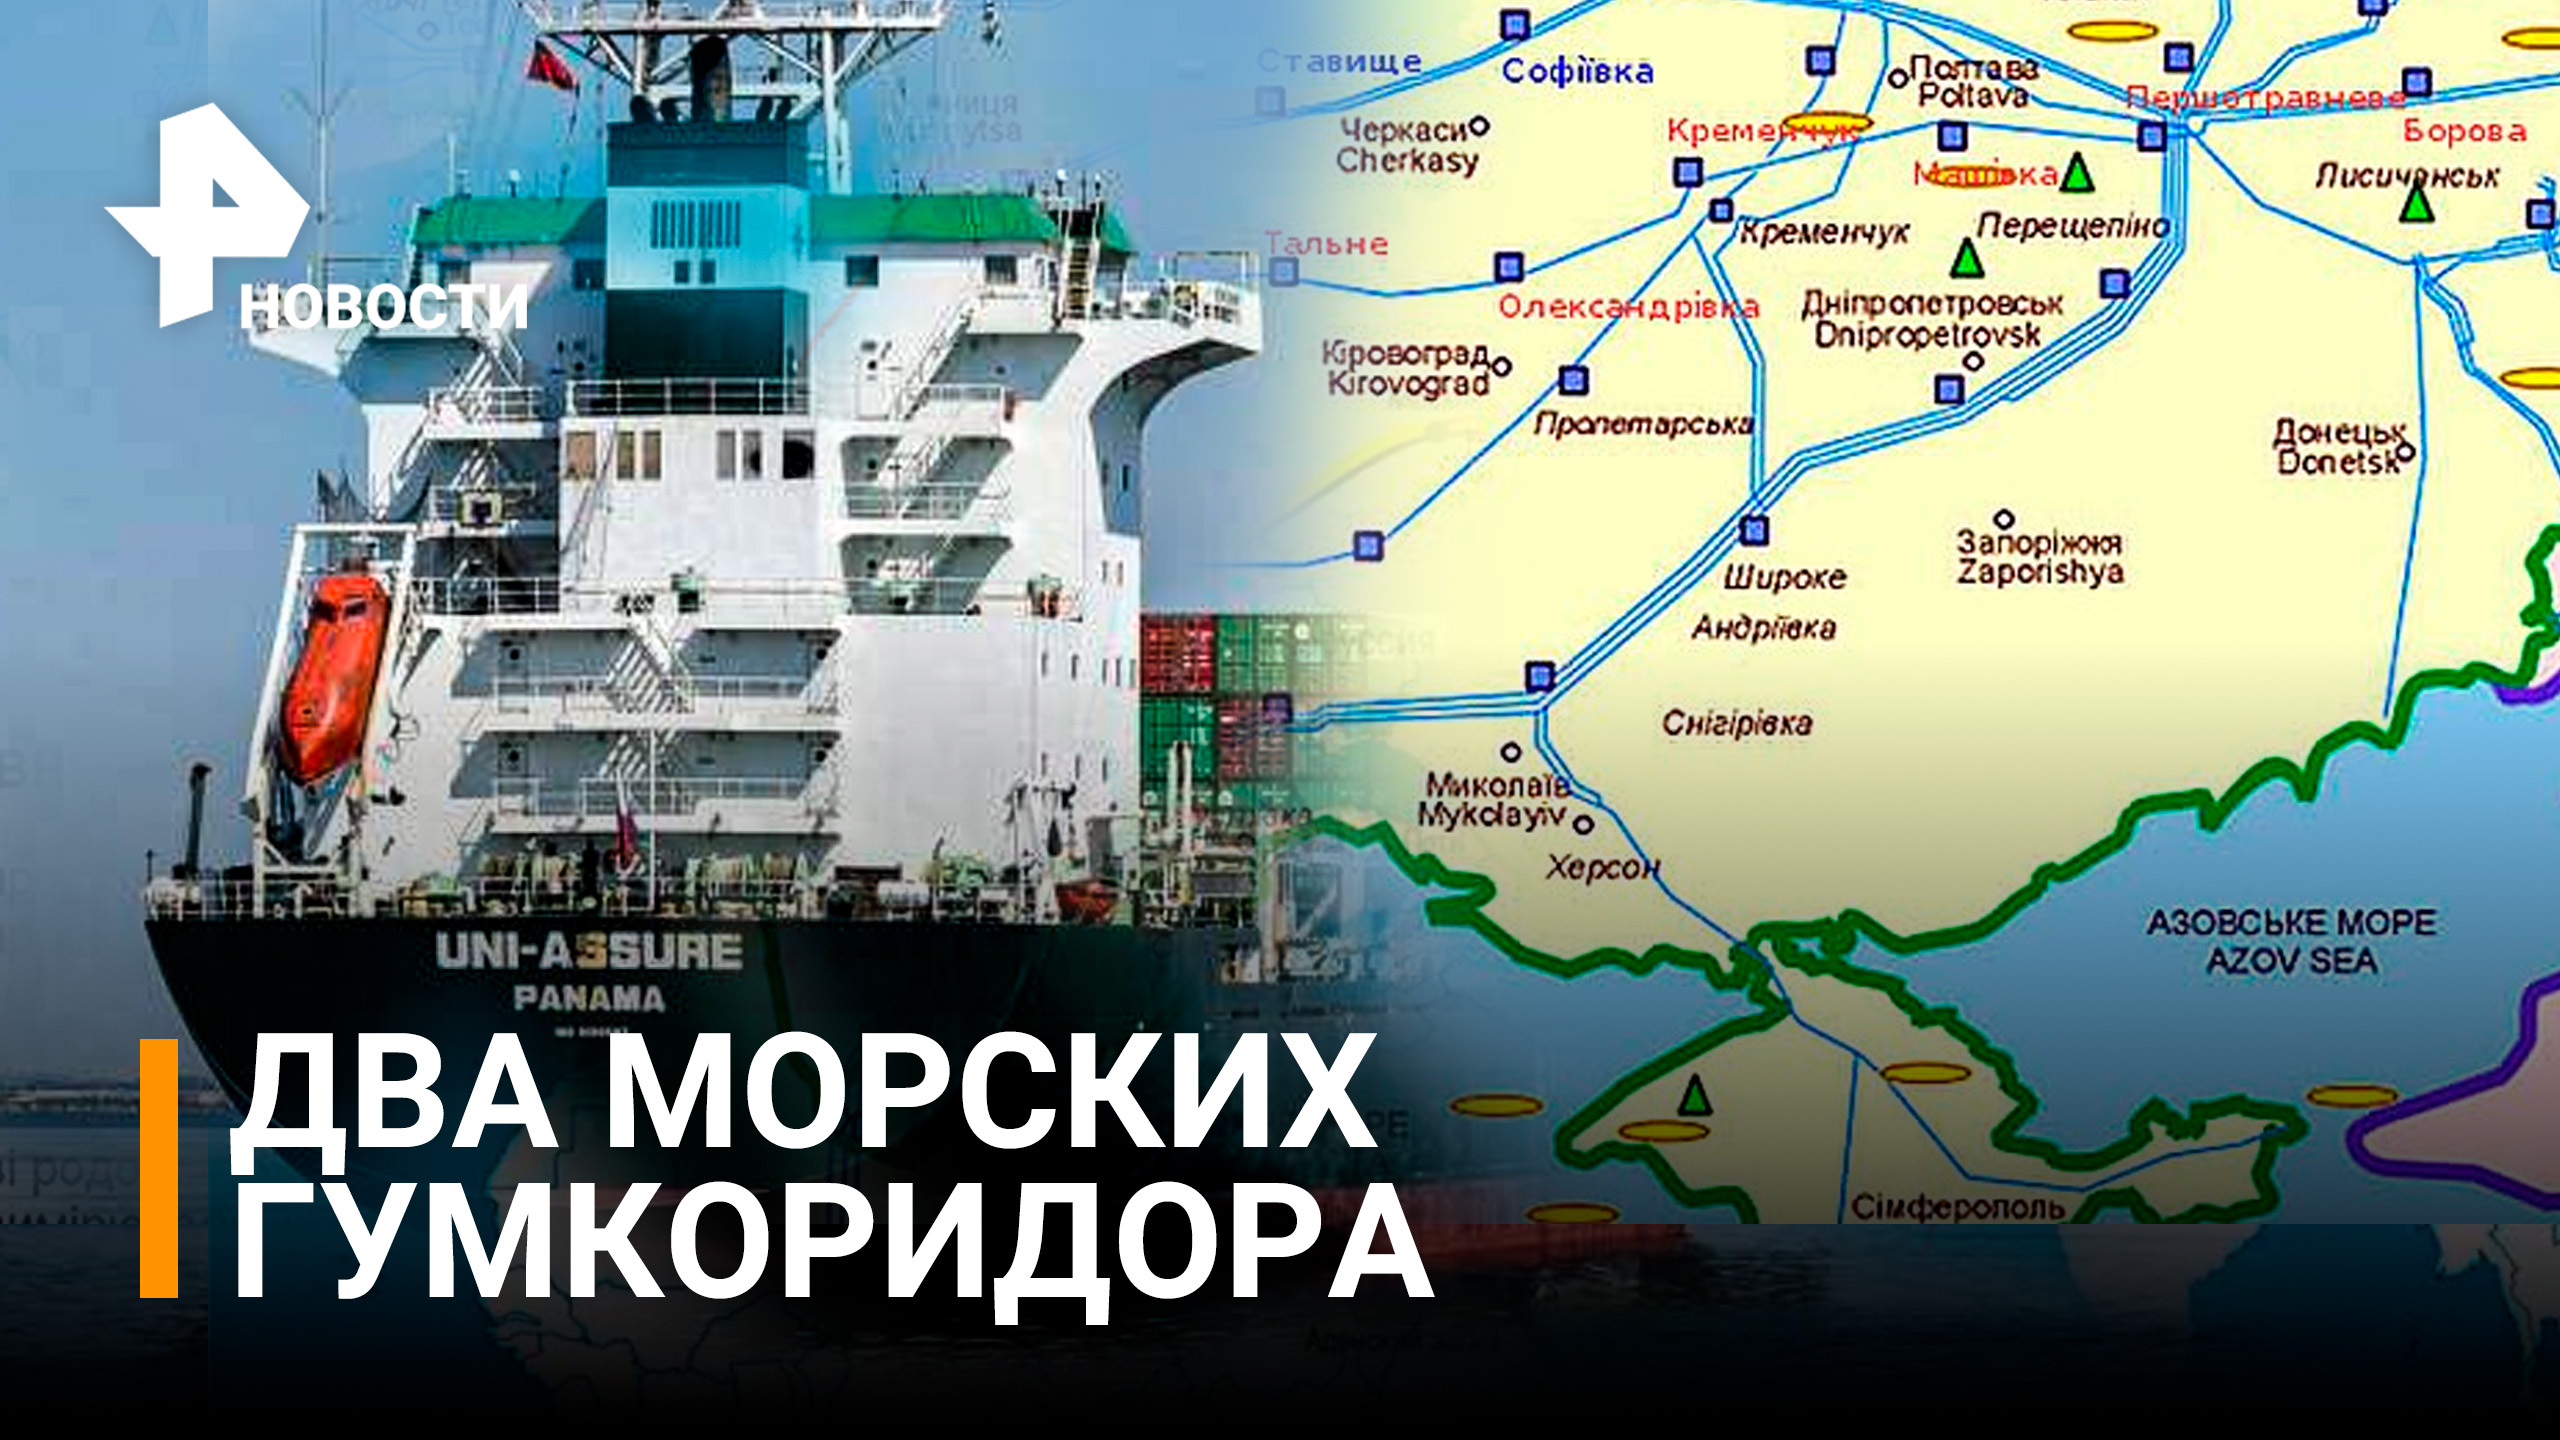 РФ открывает два морских гумкоридора для выхода иностранных судов / РЕН Новости